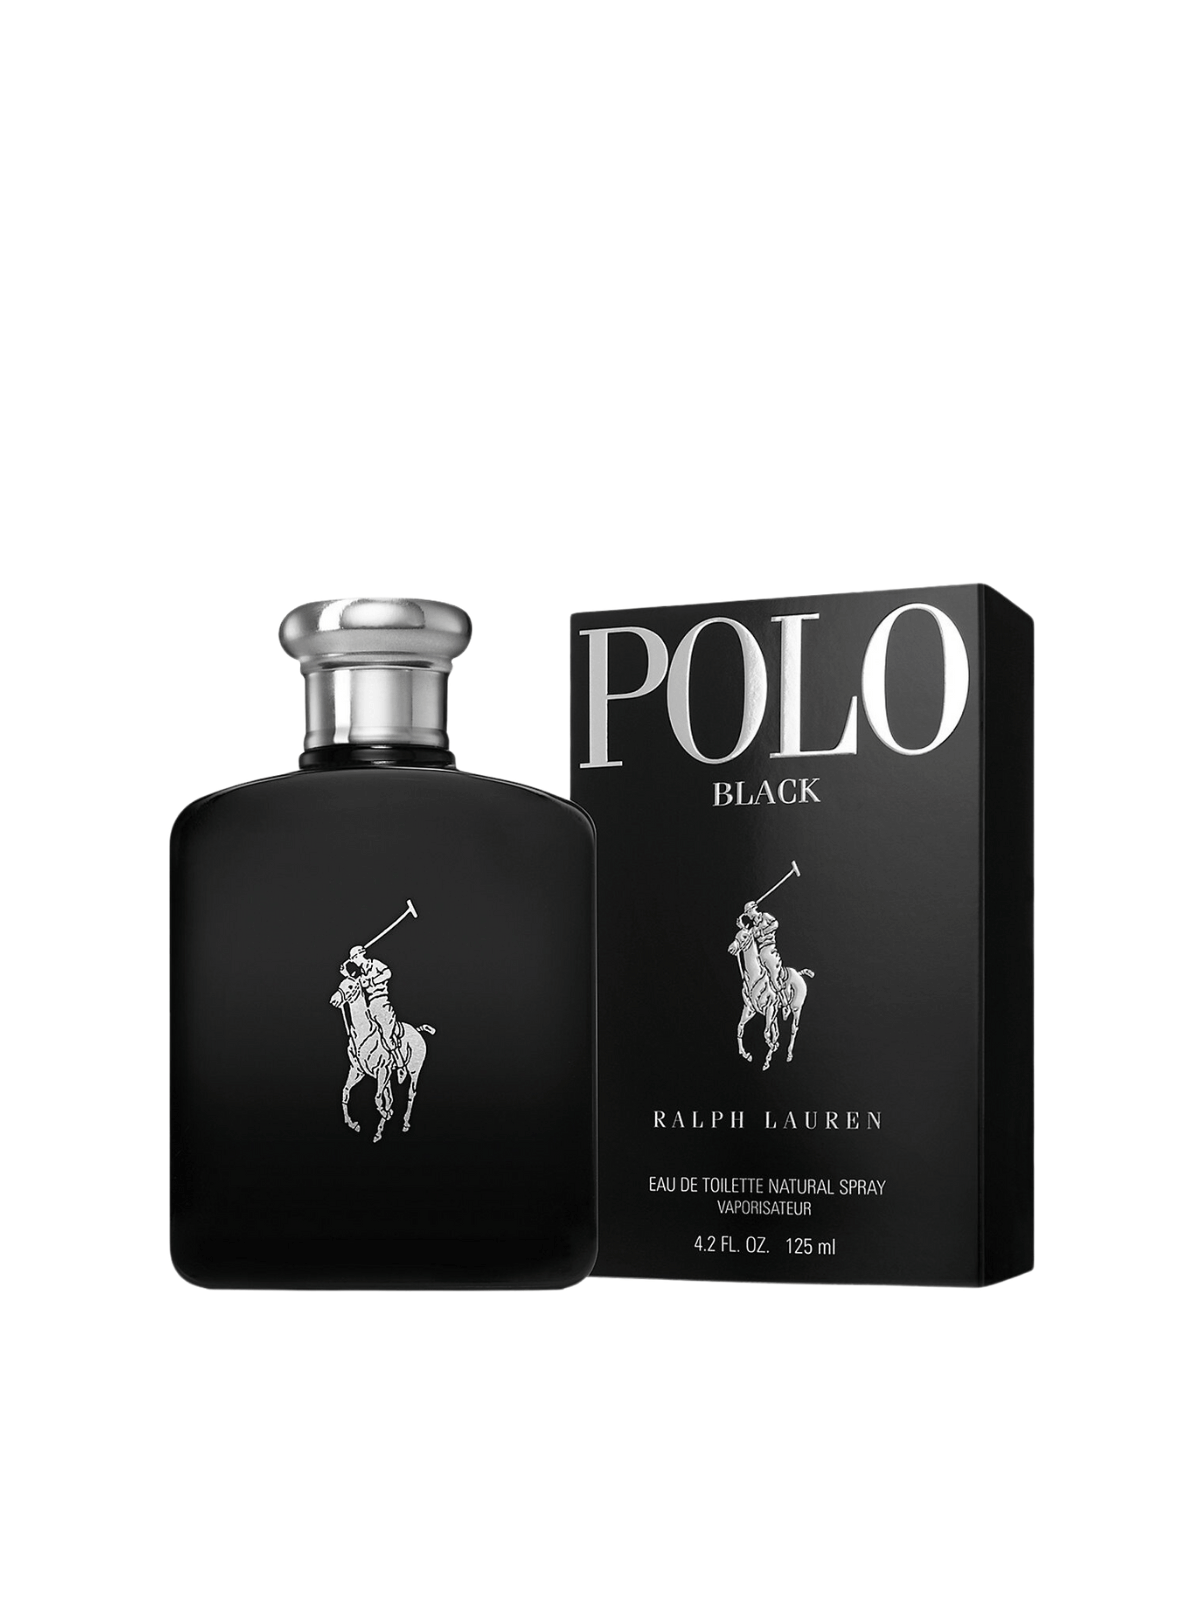 Polo Black by RALPH LAUREN Eau de Toilette